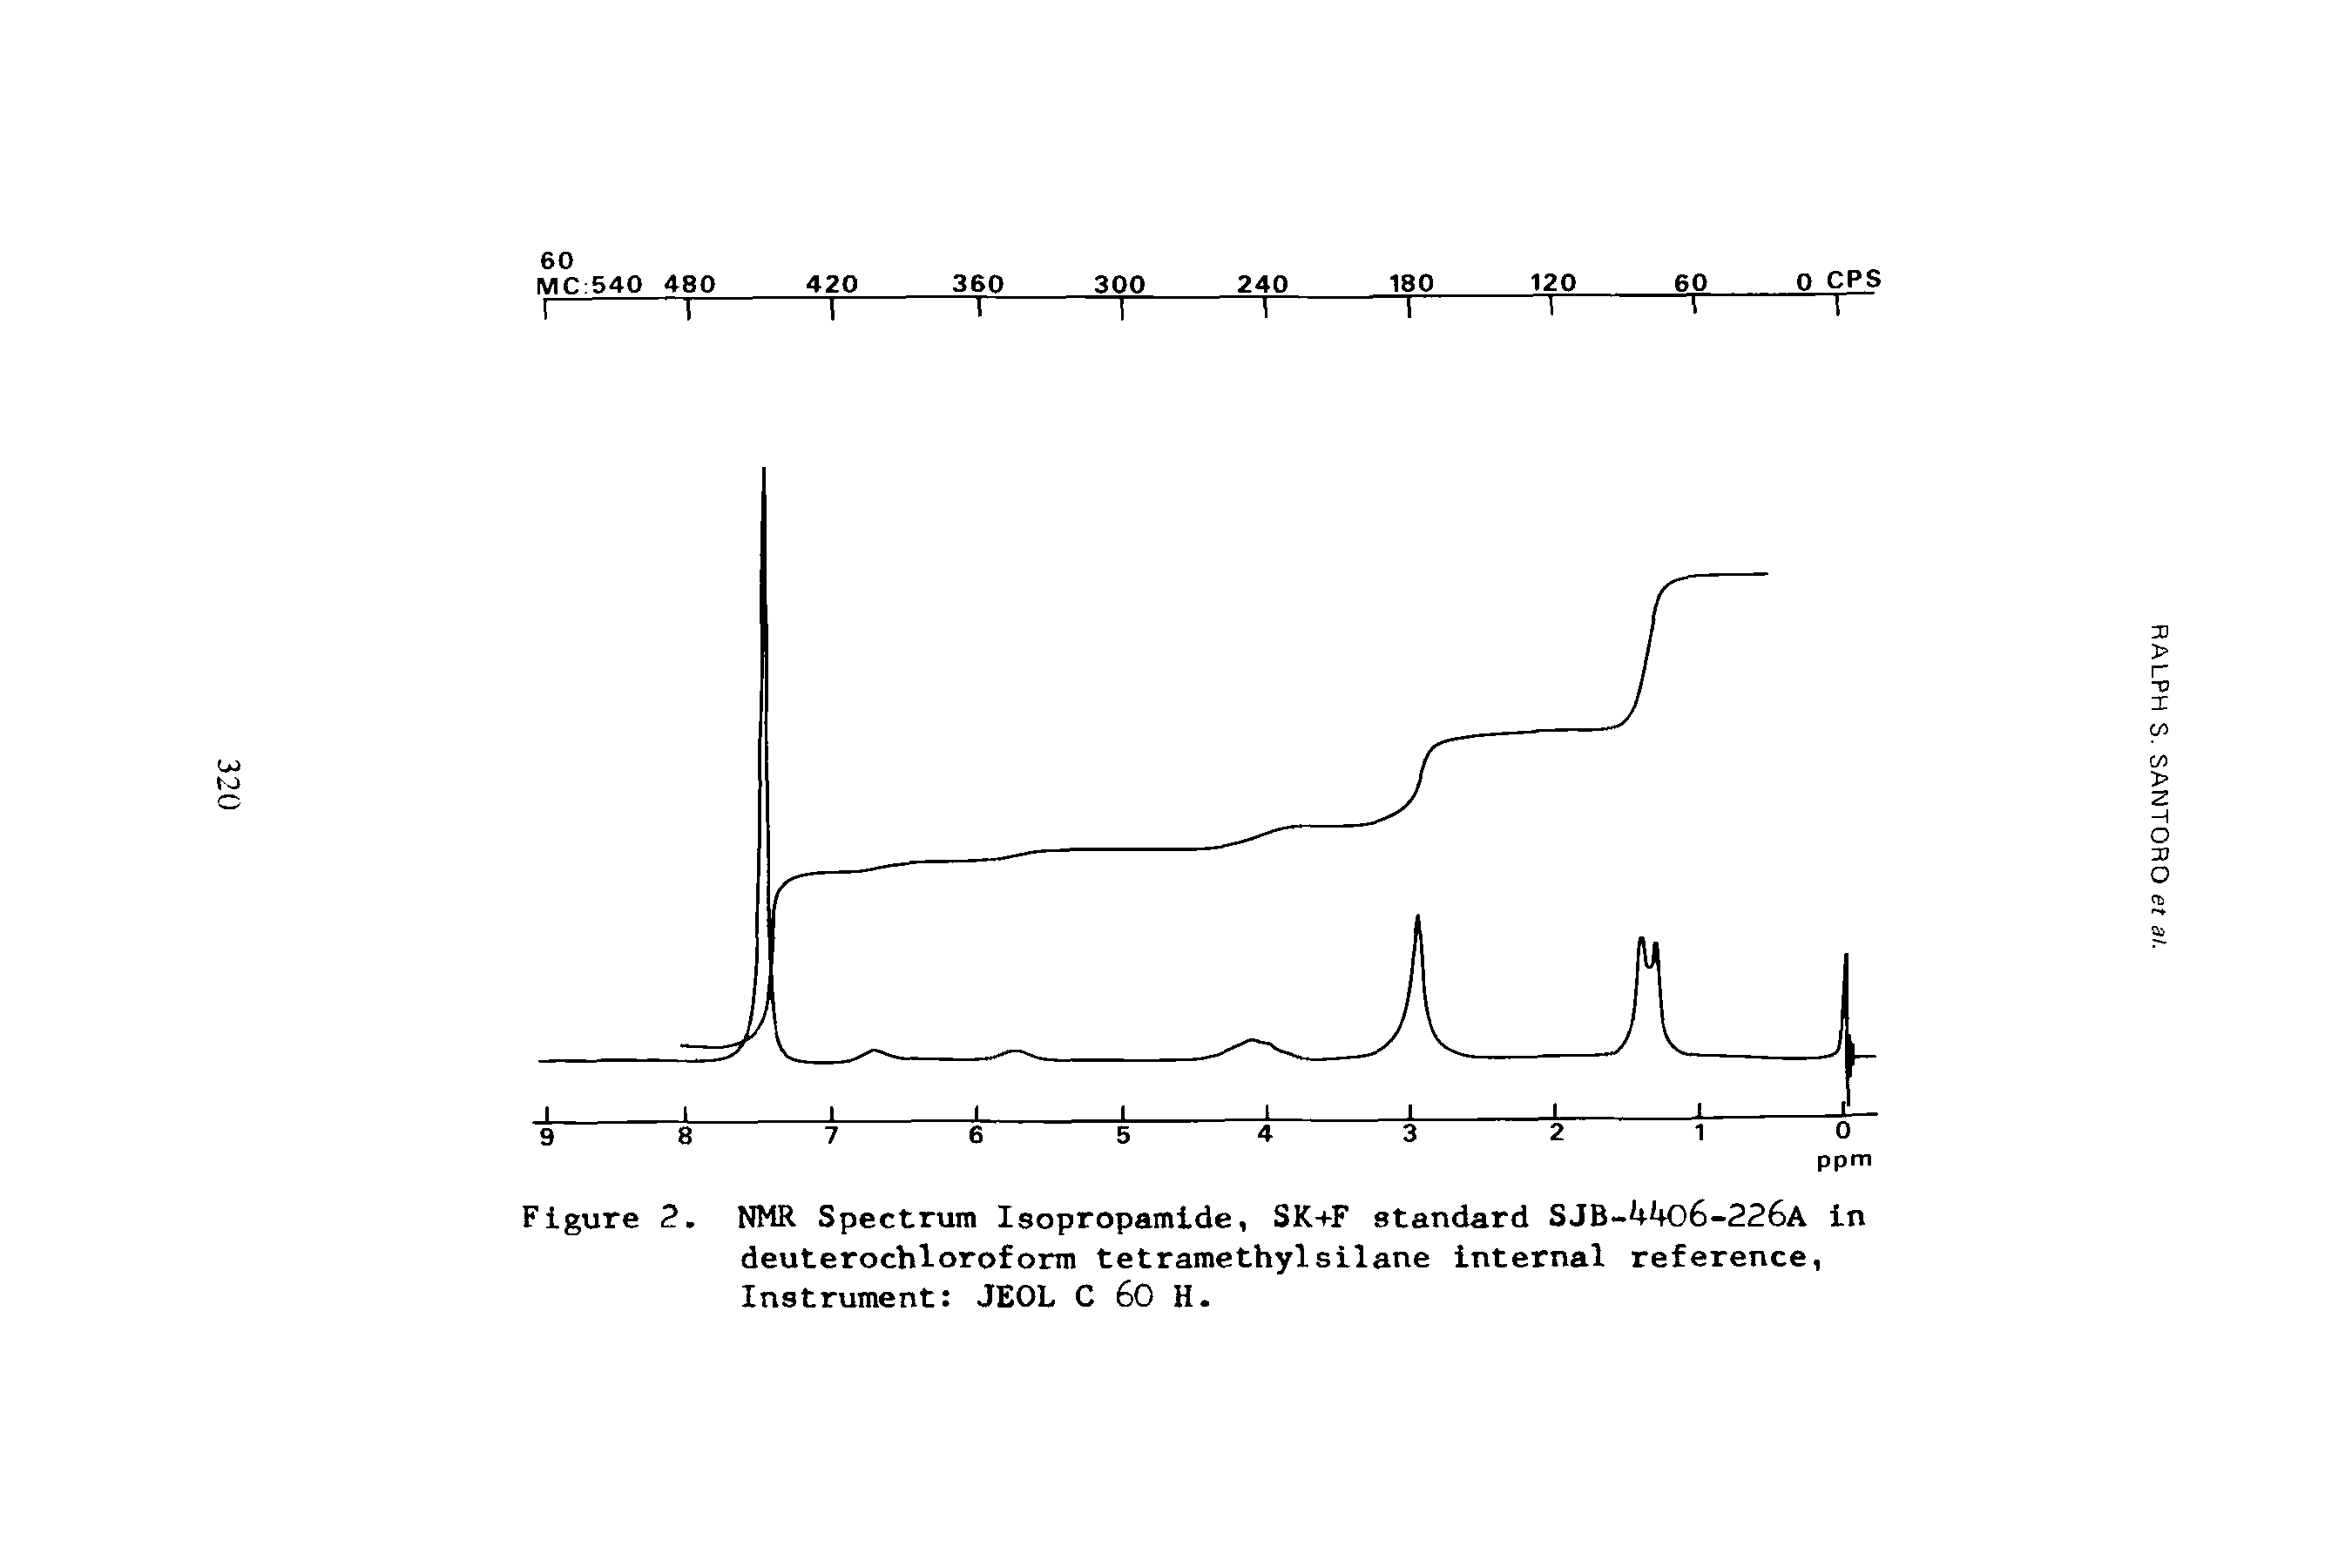 Figure 2. NMR Spectrum Isopropamide, SK+F standard SJB- 6-226a in deuterochloroform tetramethylsilane internal reference, Instrument JEOL C 60 H.